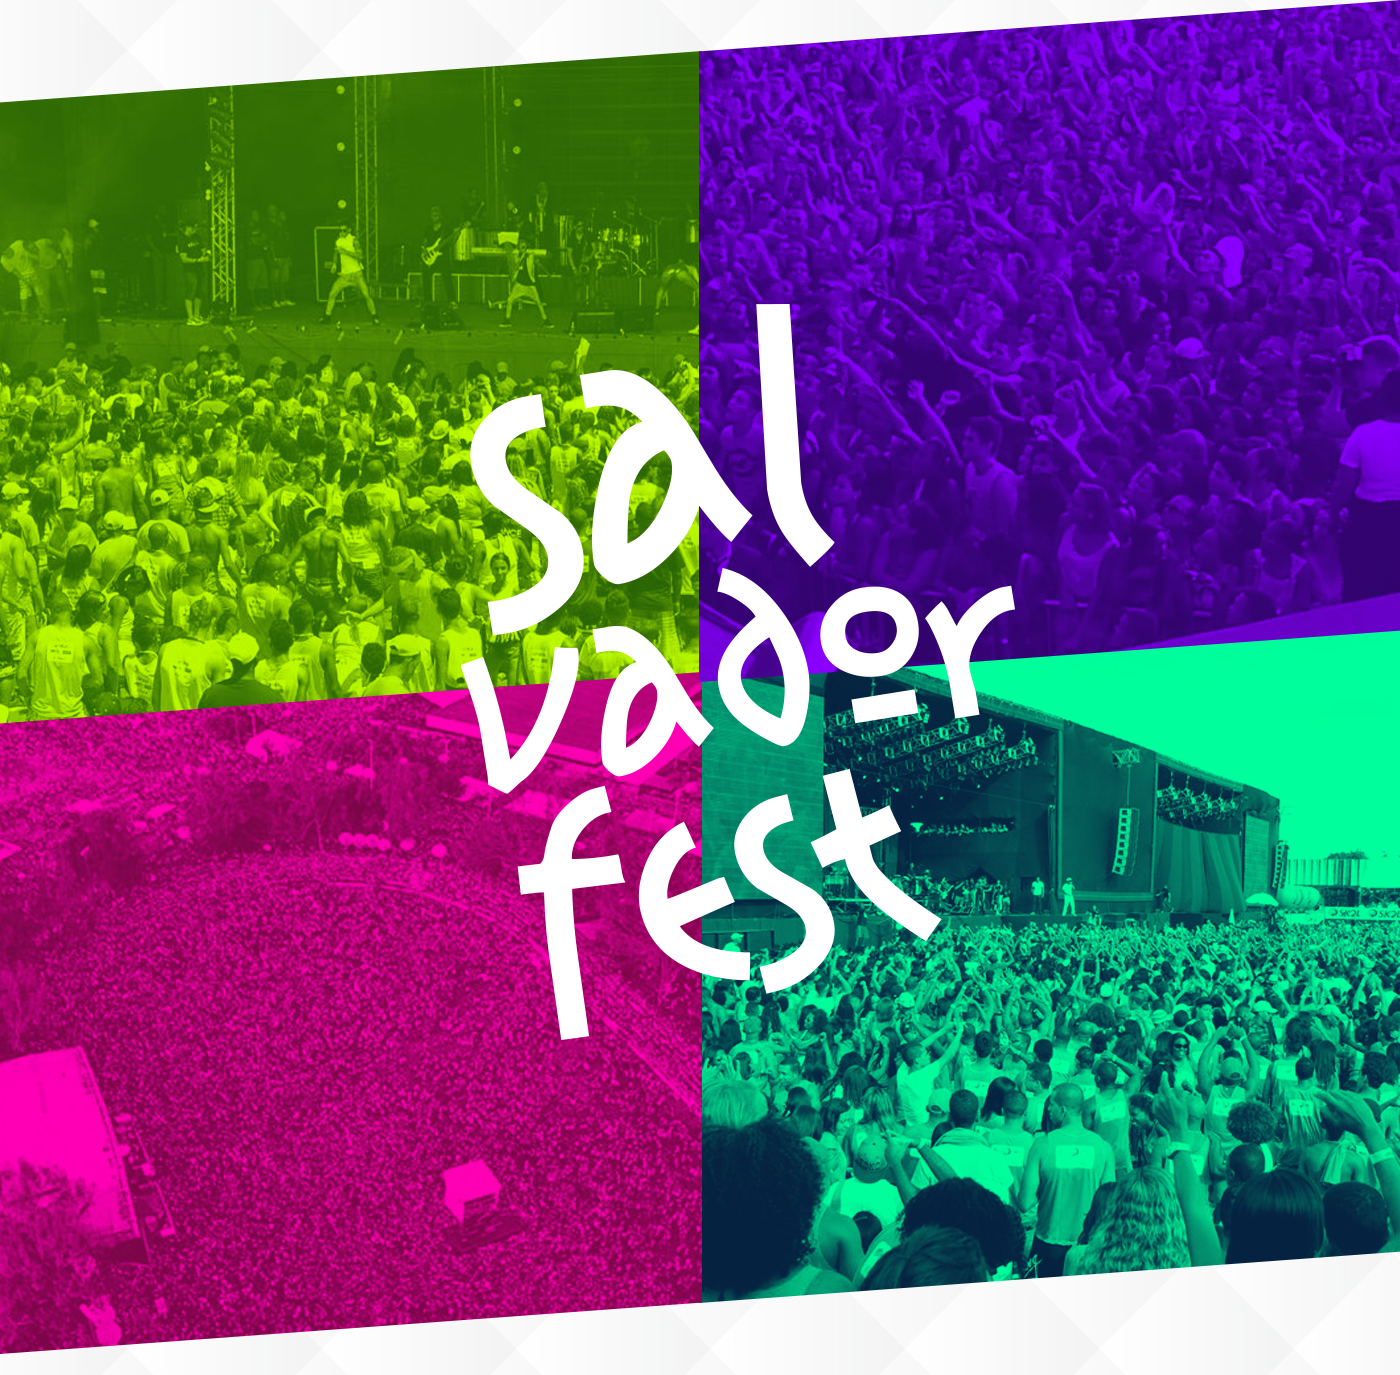 Salvador Fest marca branding evento festa maior colorida mundo cores colorido bahia